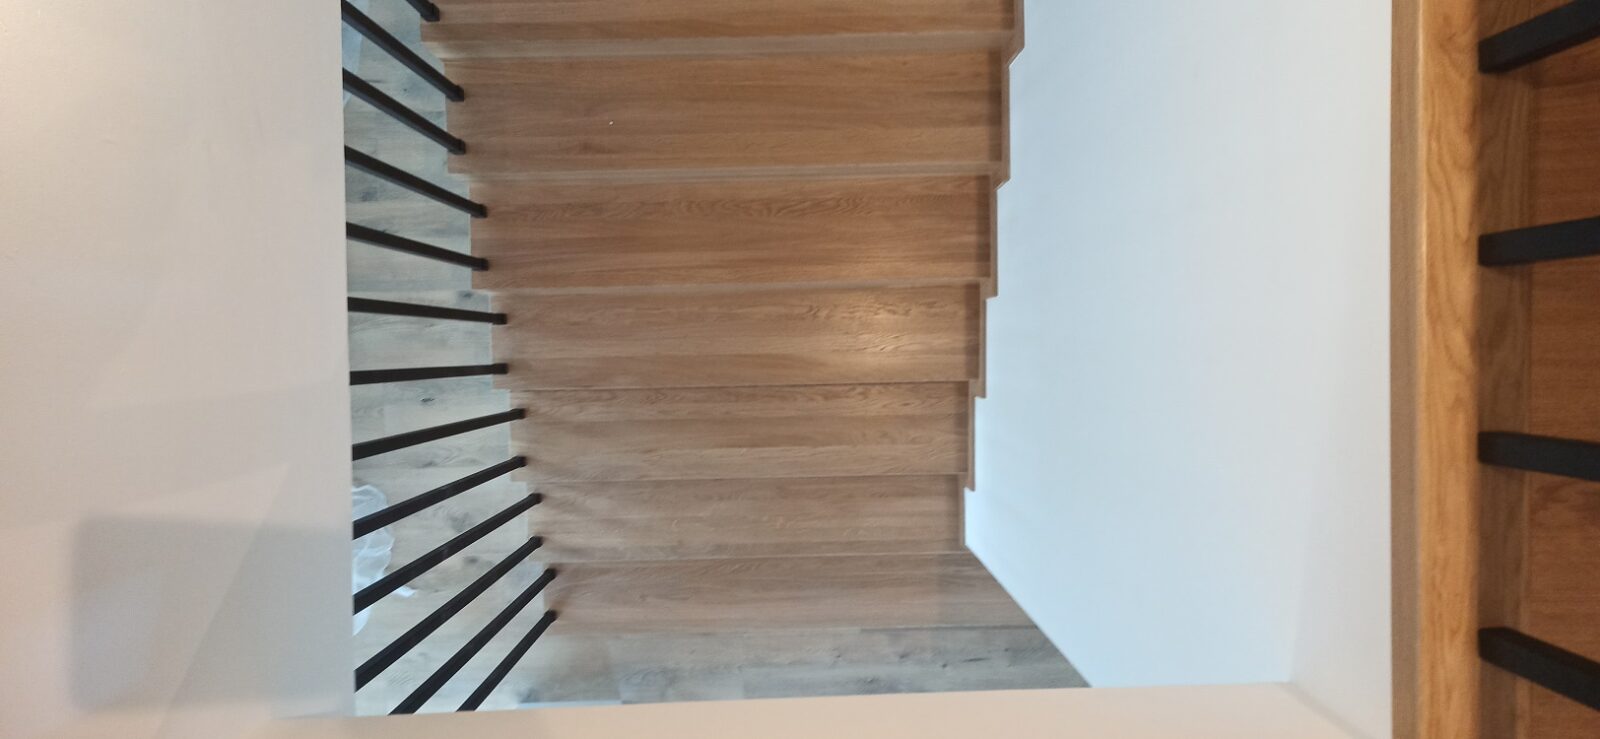 schody wykonane z drewna